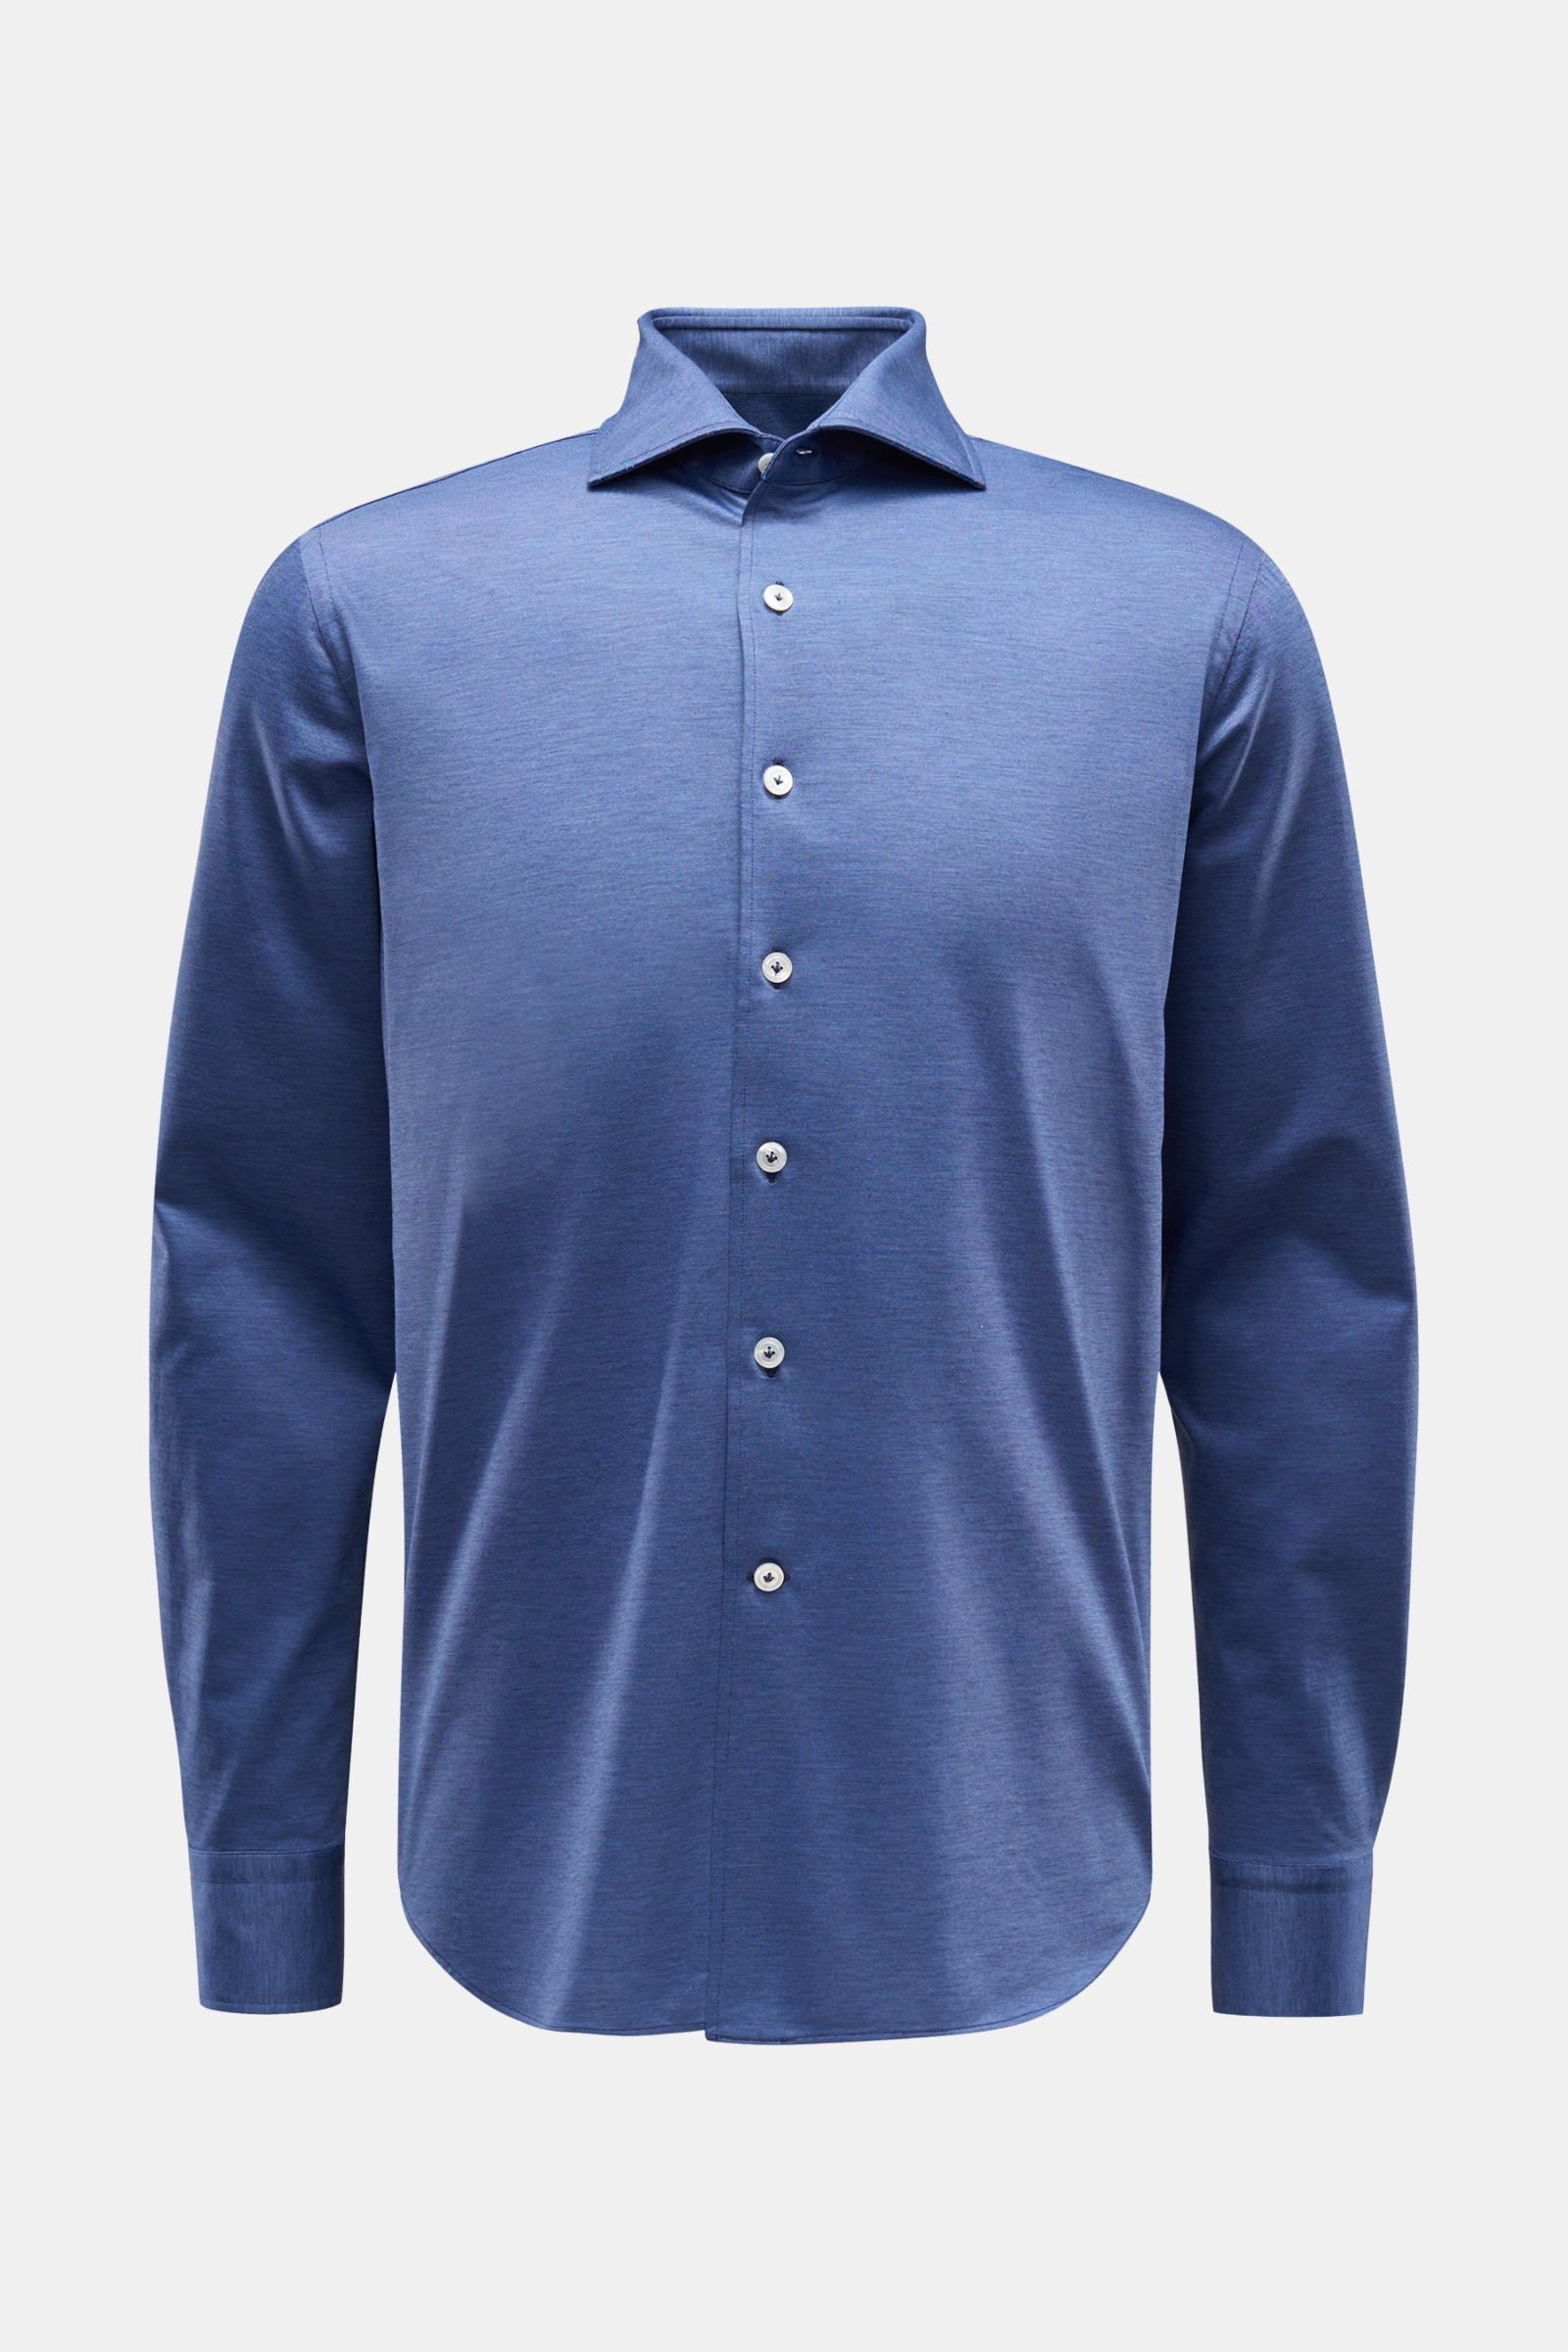 Jersey shirt shark collar grey-blue